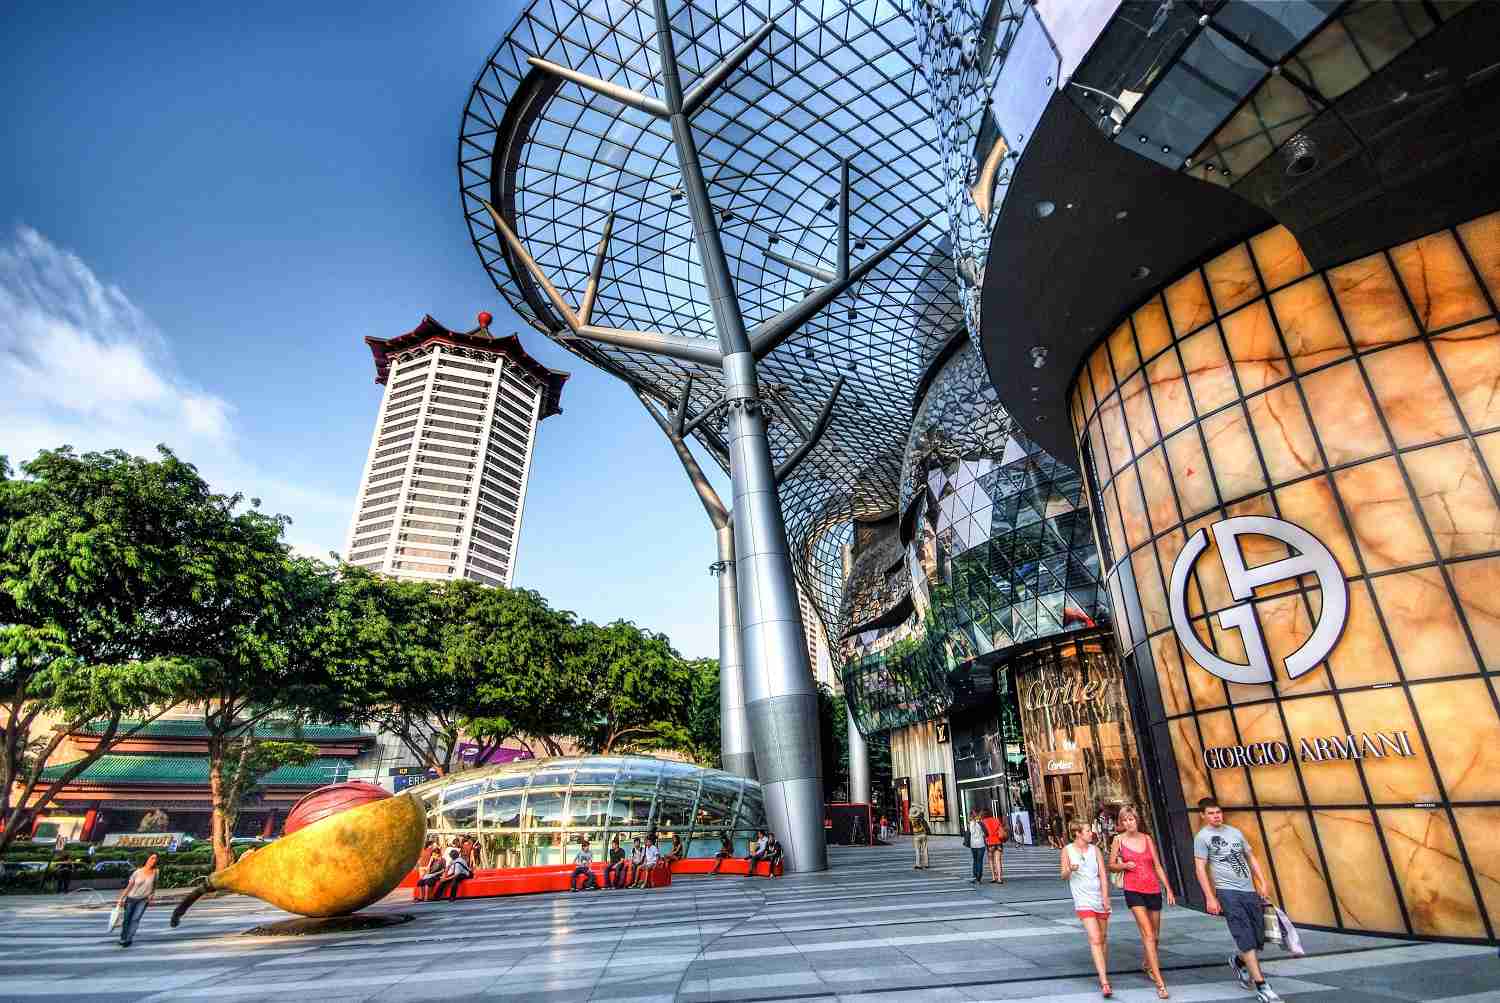 Đại lộ Vòng Cung làm gợi nhớ đến khu Orchard Road, Singapore từ 150 năm trước, và sự sầm uất bậc nhất Đông Nam Á trong hiện tại với không gian sống xa hoa của giới thượng lưu